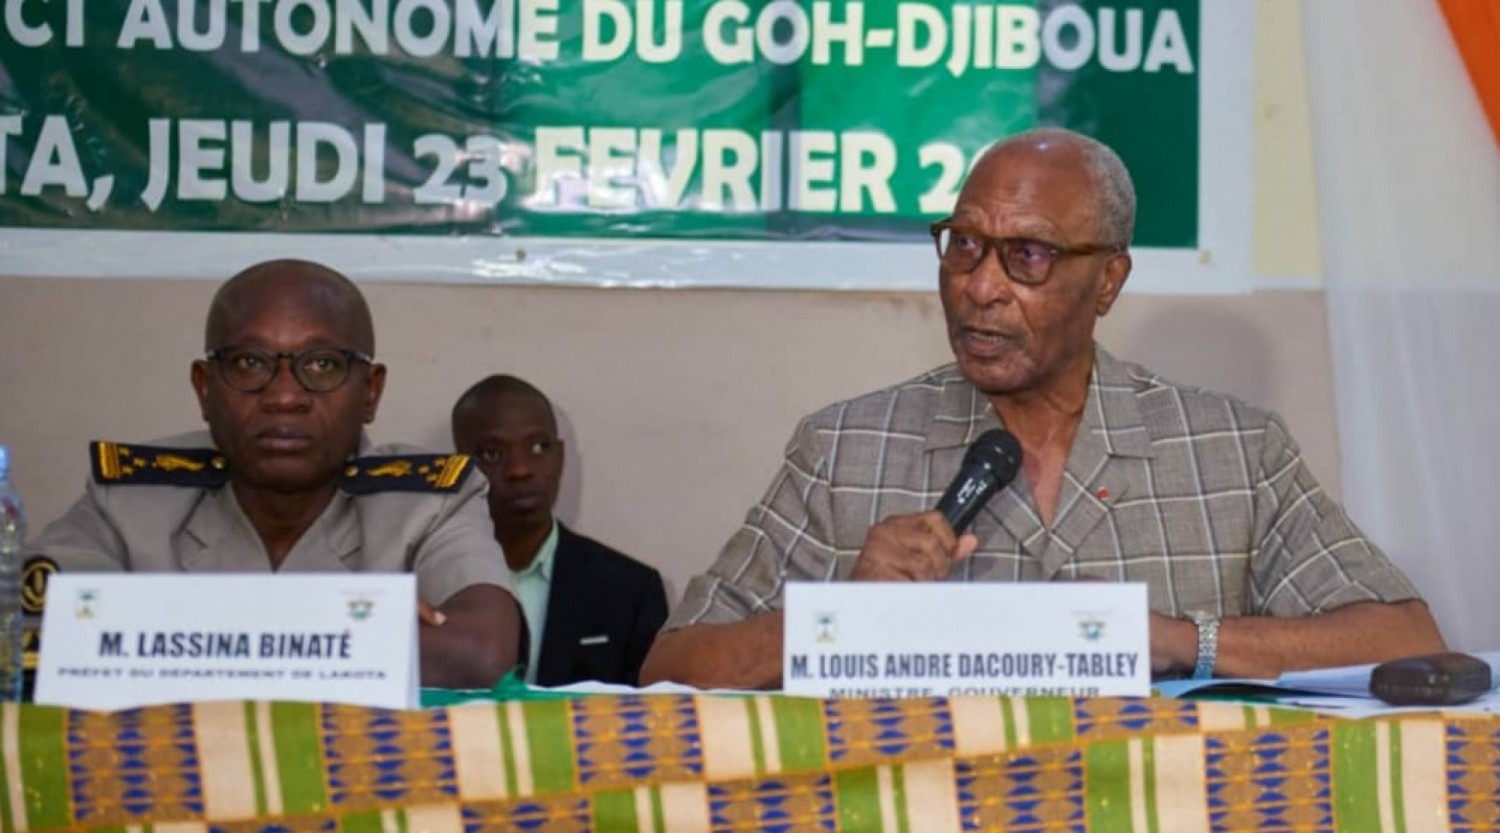 Côte d'Ivoire : Le Ministre-Gouverneur Louis André Dacoury-Tabley veut faire d'une référence le District Gôh-Djiboua